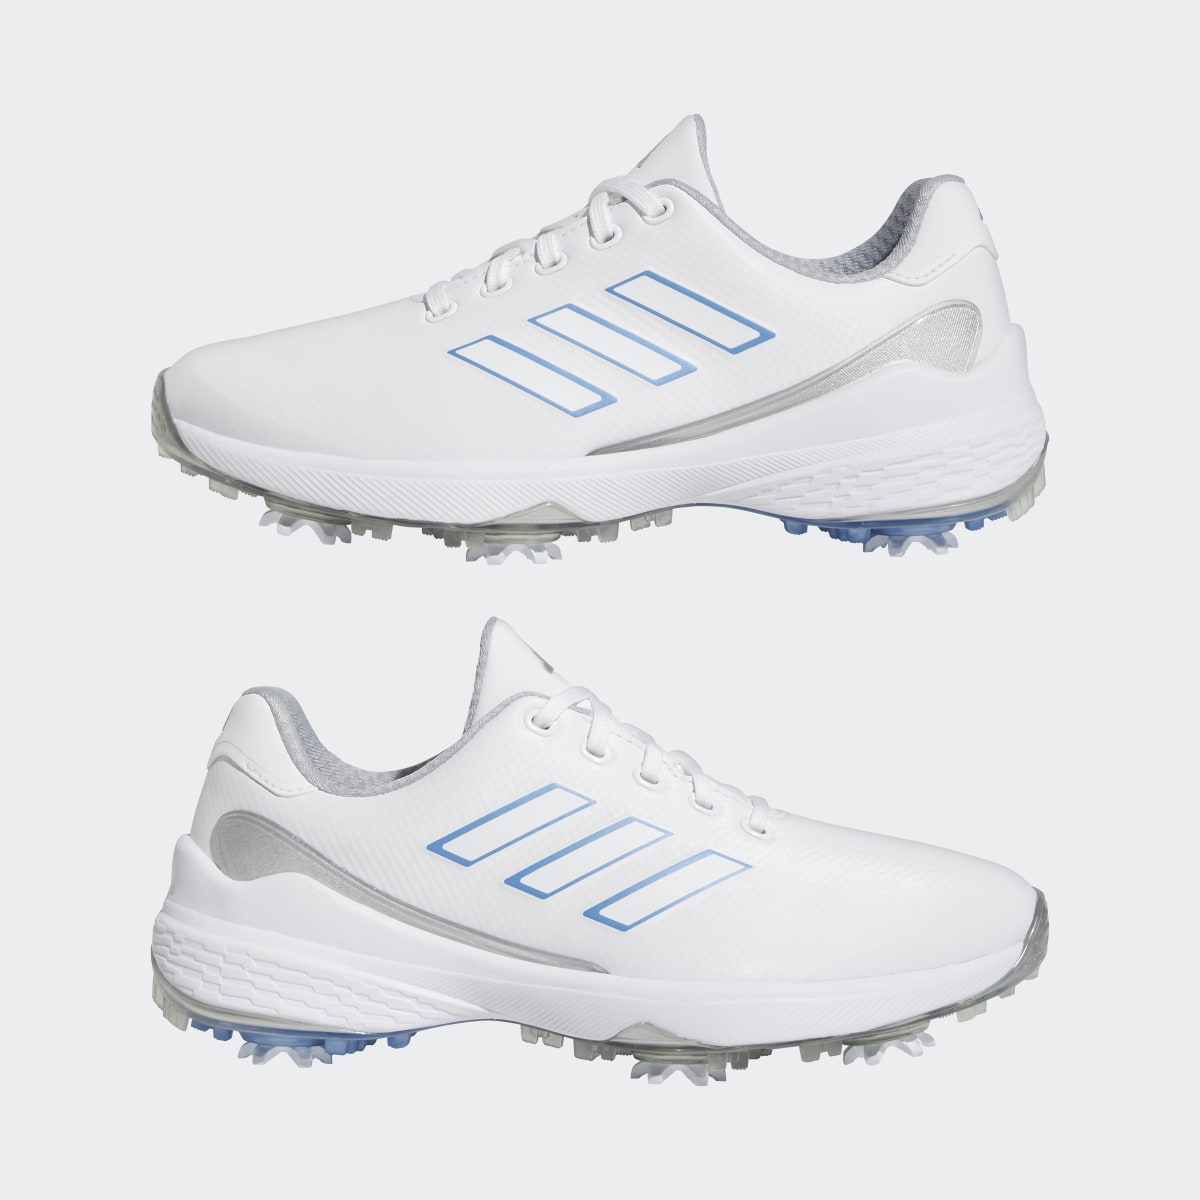 Adidas ZG23 Golf Shoes. 8